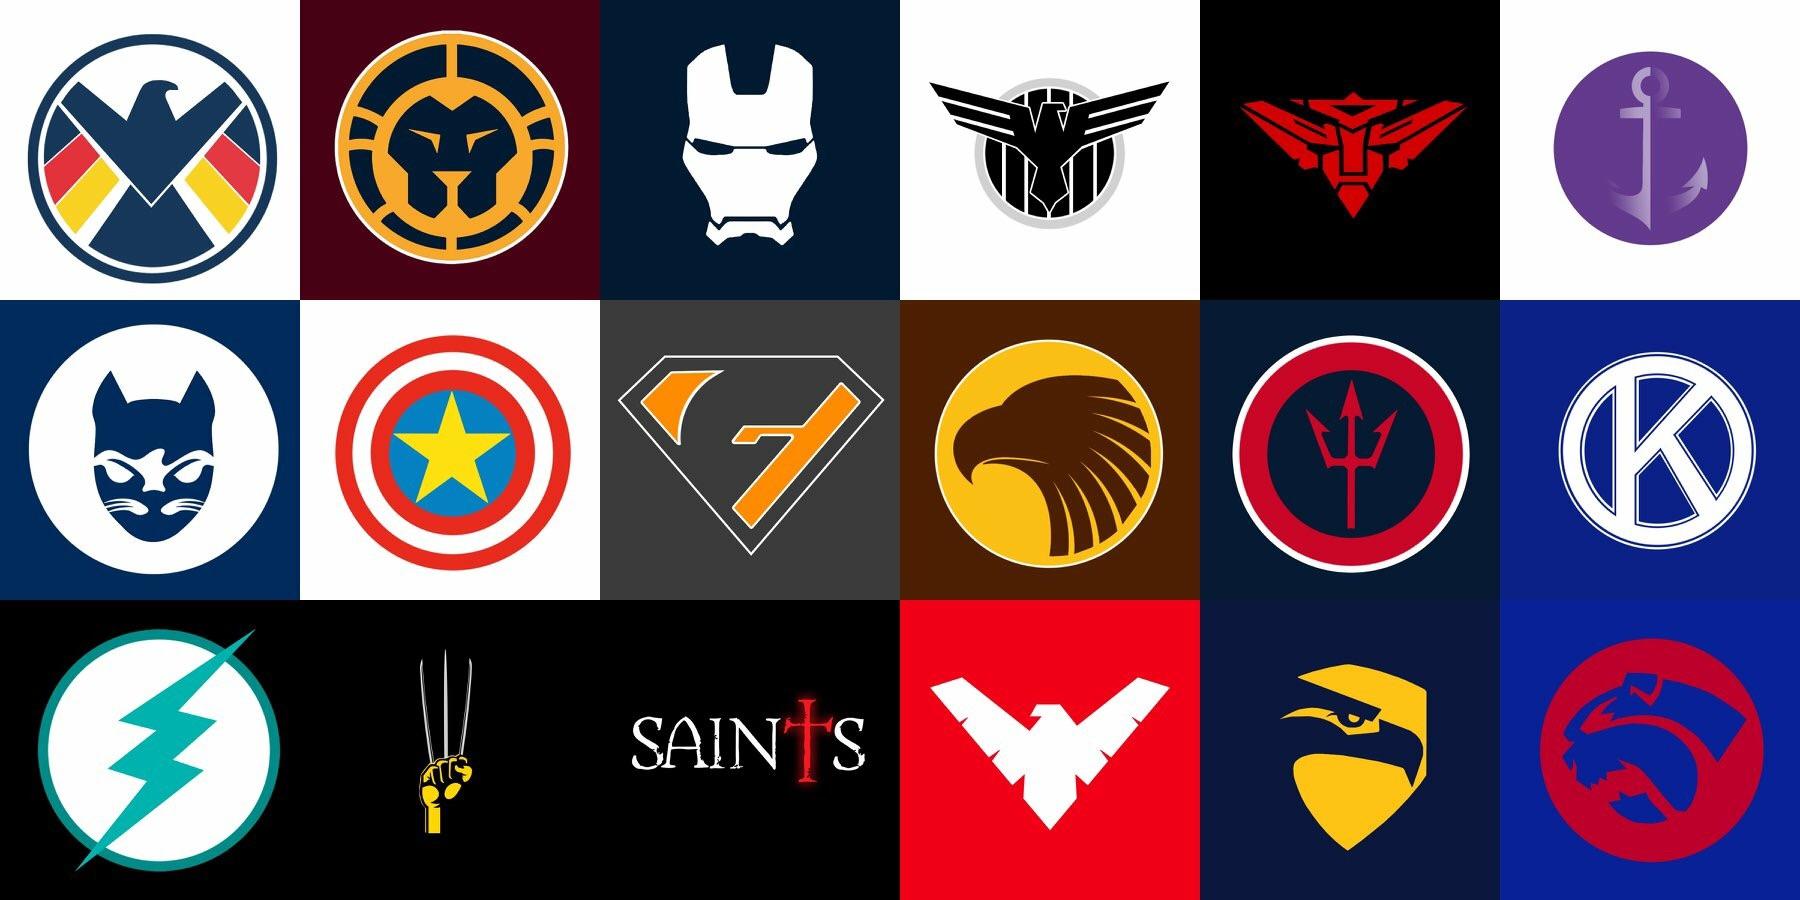 Every Superhero Logo - Every AFL team as a superhero logo